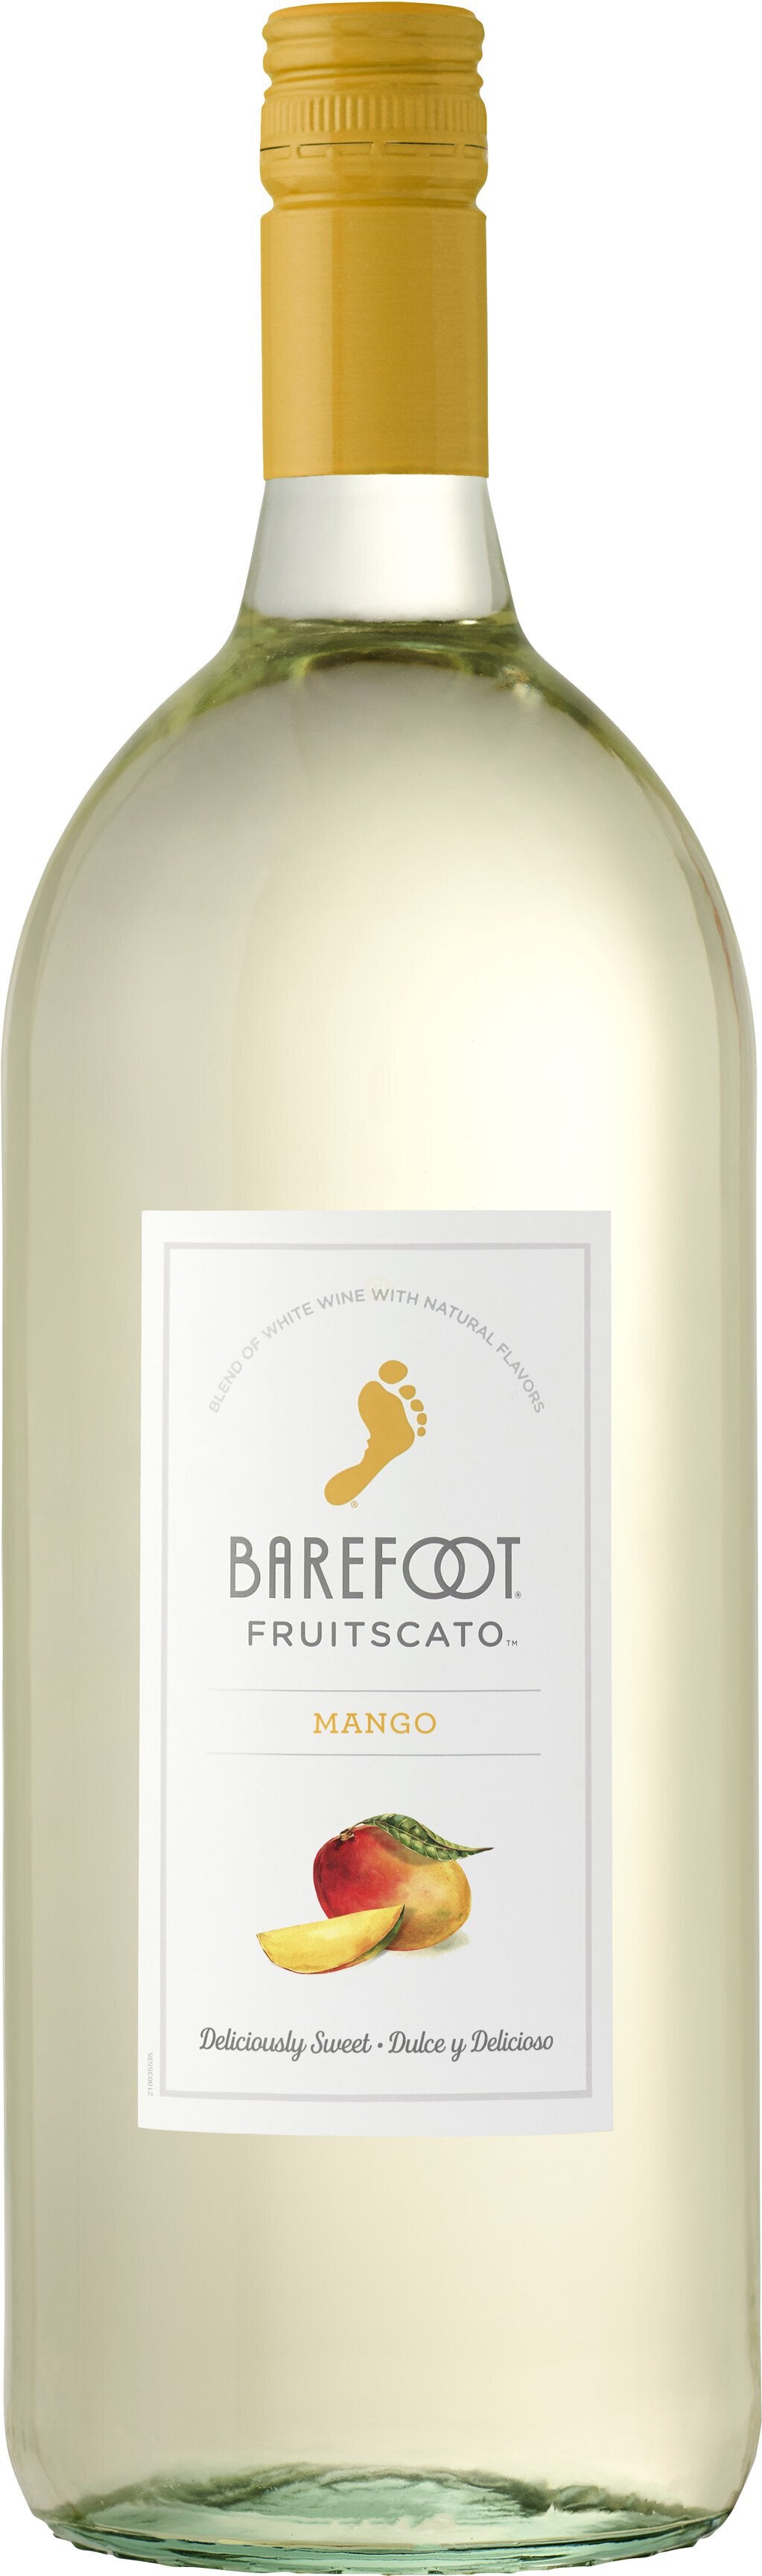 Barefoot Fruitscato Mango 750 ml